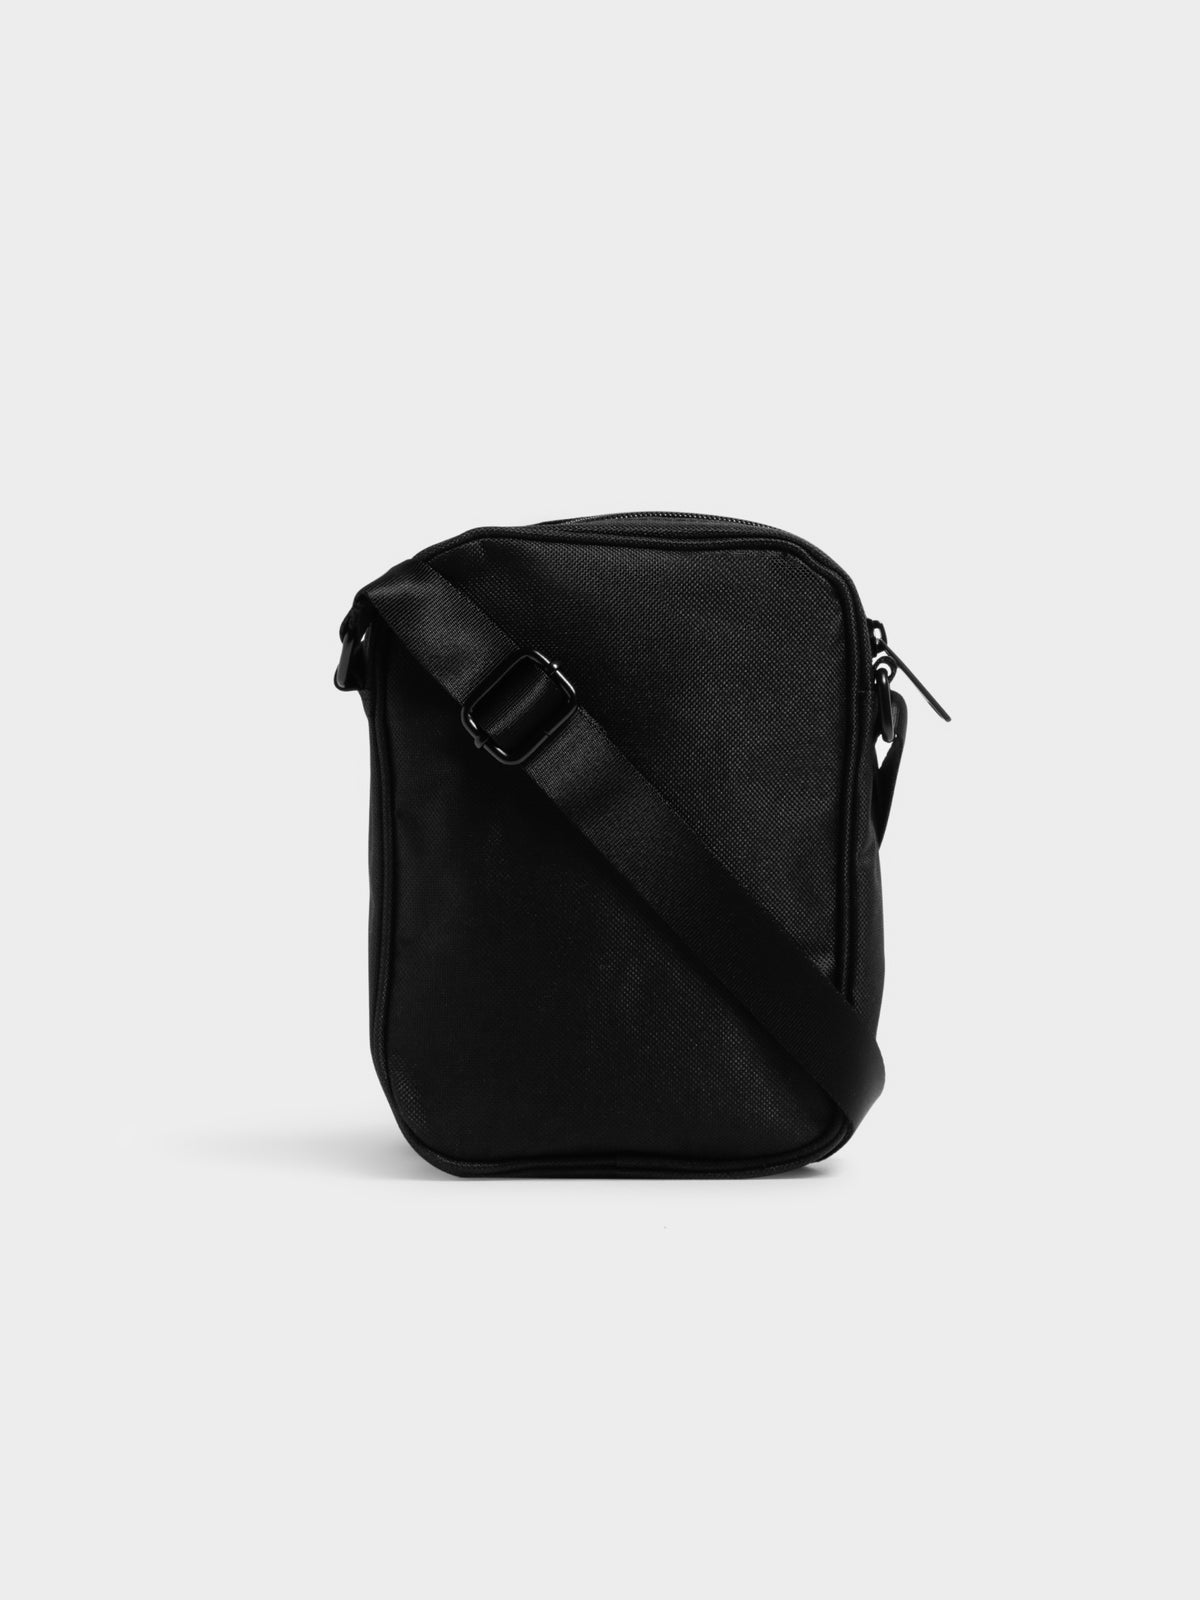 Stock Messenger Bag in Black